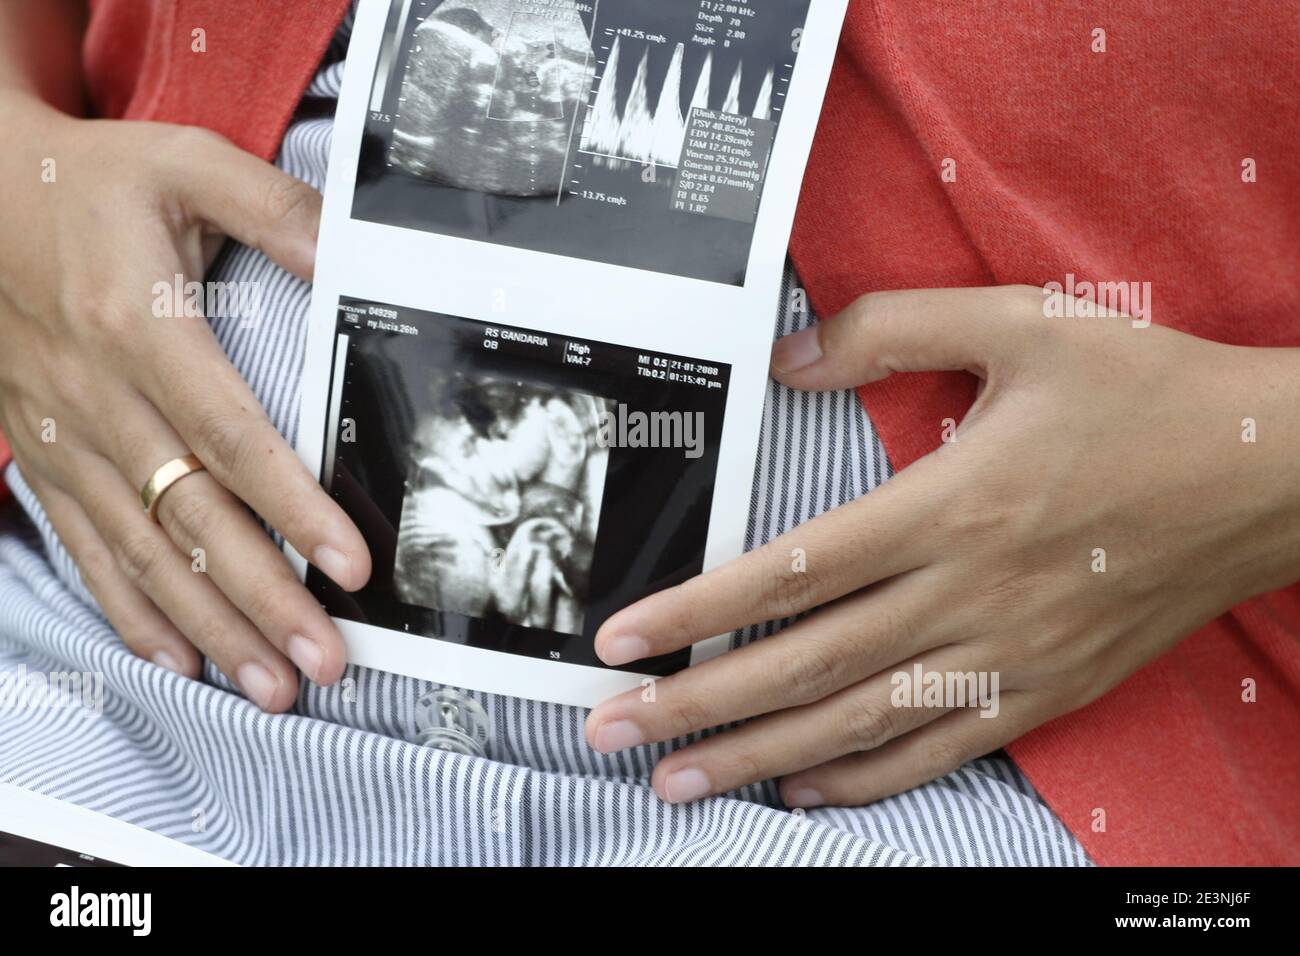 Eine schwangere Frau, die einen Ultraschallausdruck hält, der das Baby in ihrem Gebärmutterleib zeigt Stockfoto